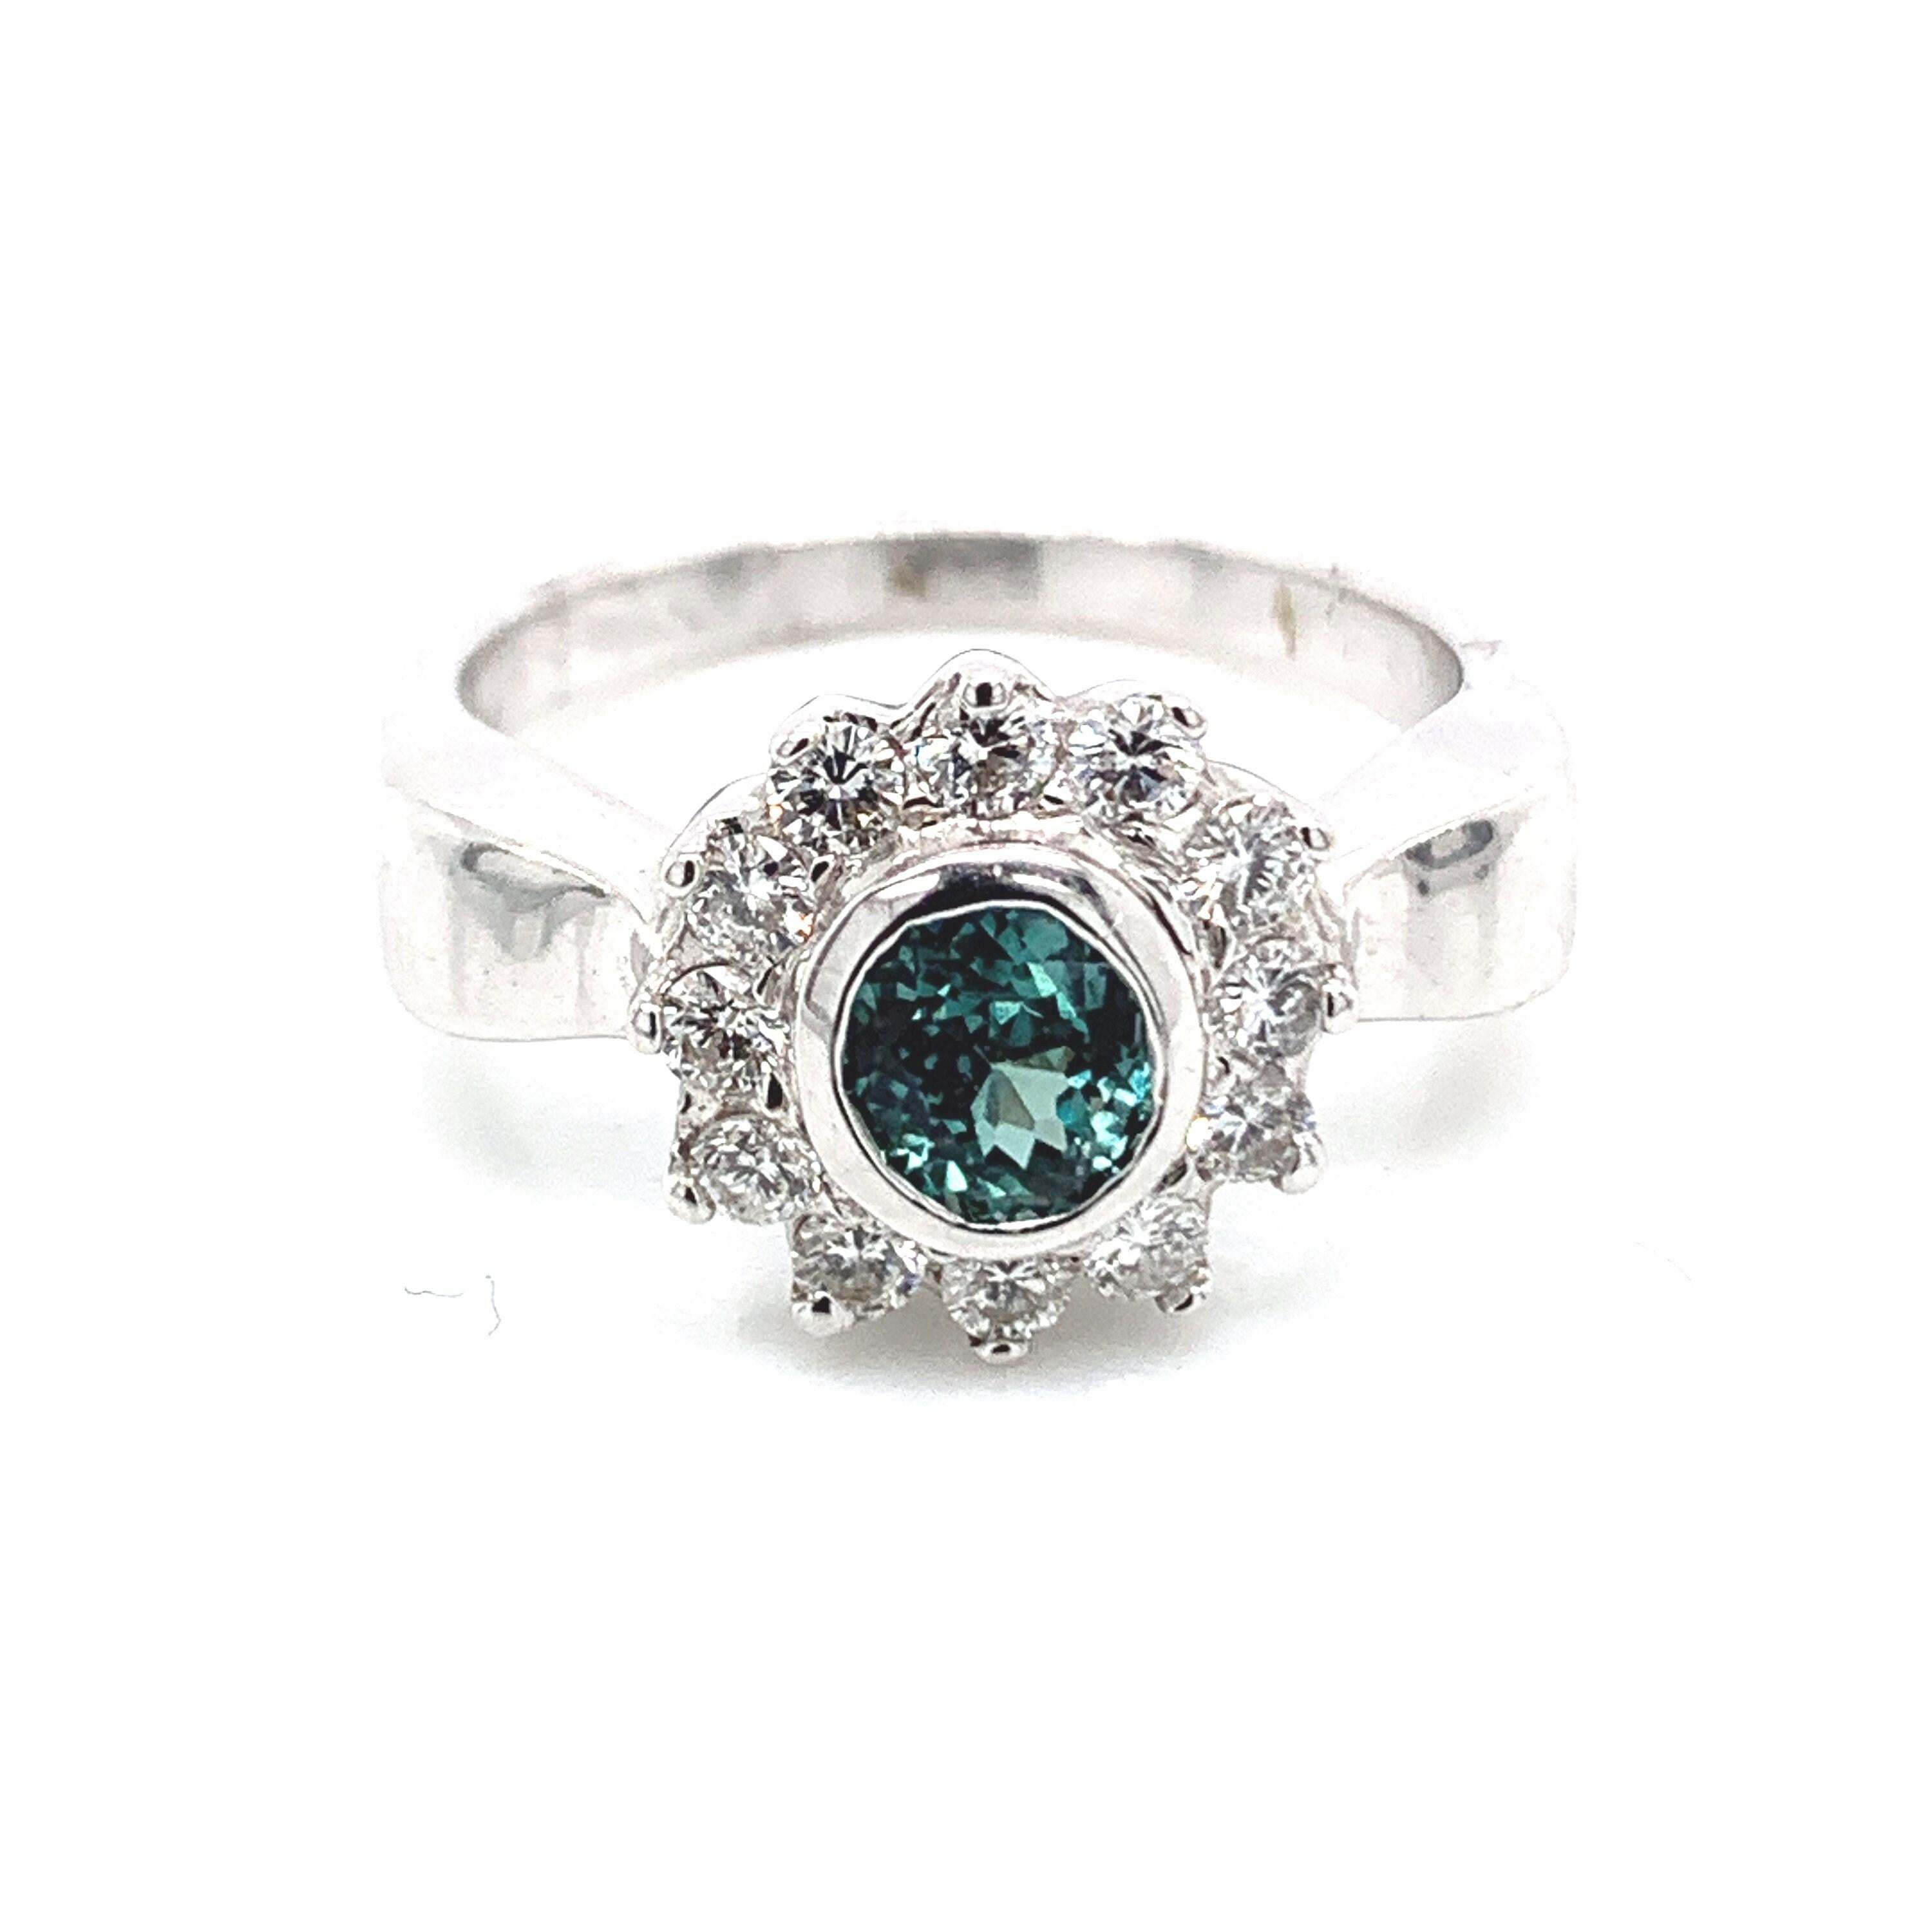 Il s'agit d'une magnifique Alexandrite ronde naturelle de qualité AAA entourée de délicats diamants sertis dans une monture vintage en platine. Cette bague présente une alexandrite naturelle ronde de 1,01 mm entourée d'un halo de diamants blancs de